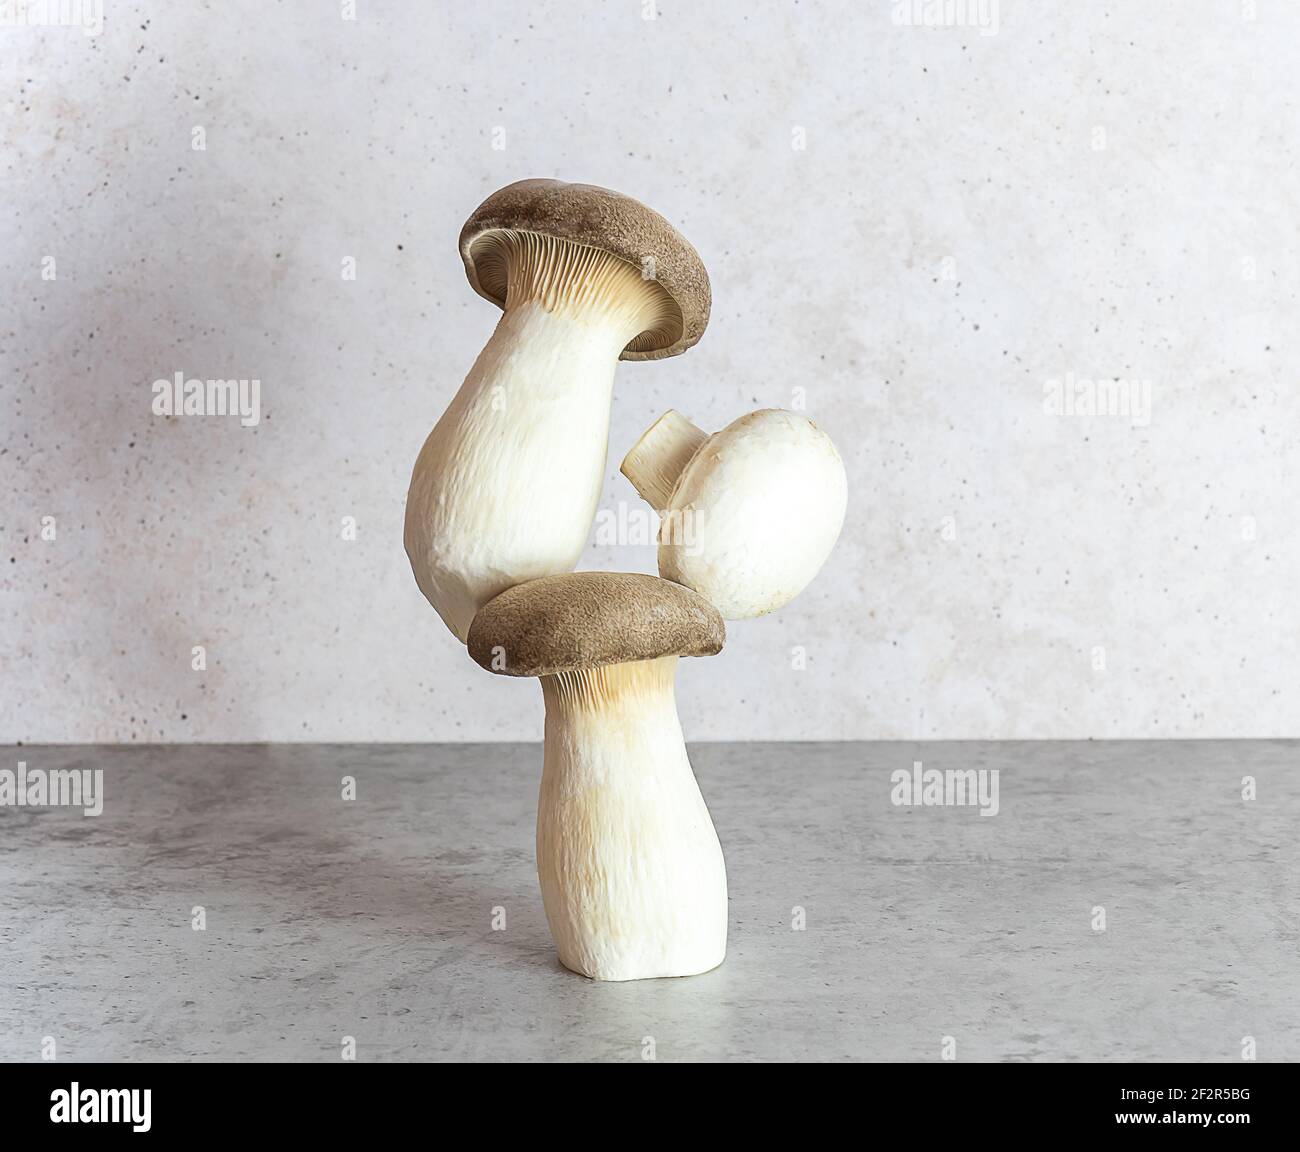 Eringi o il fungo di ostrica del re. Equilibrio fluttuante equilibrio alimentare. Foto Stock